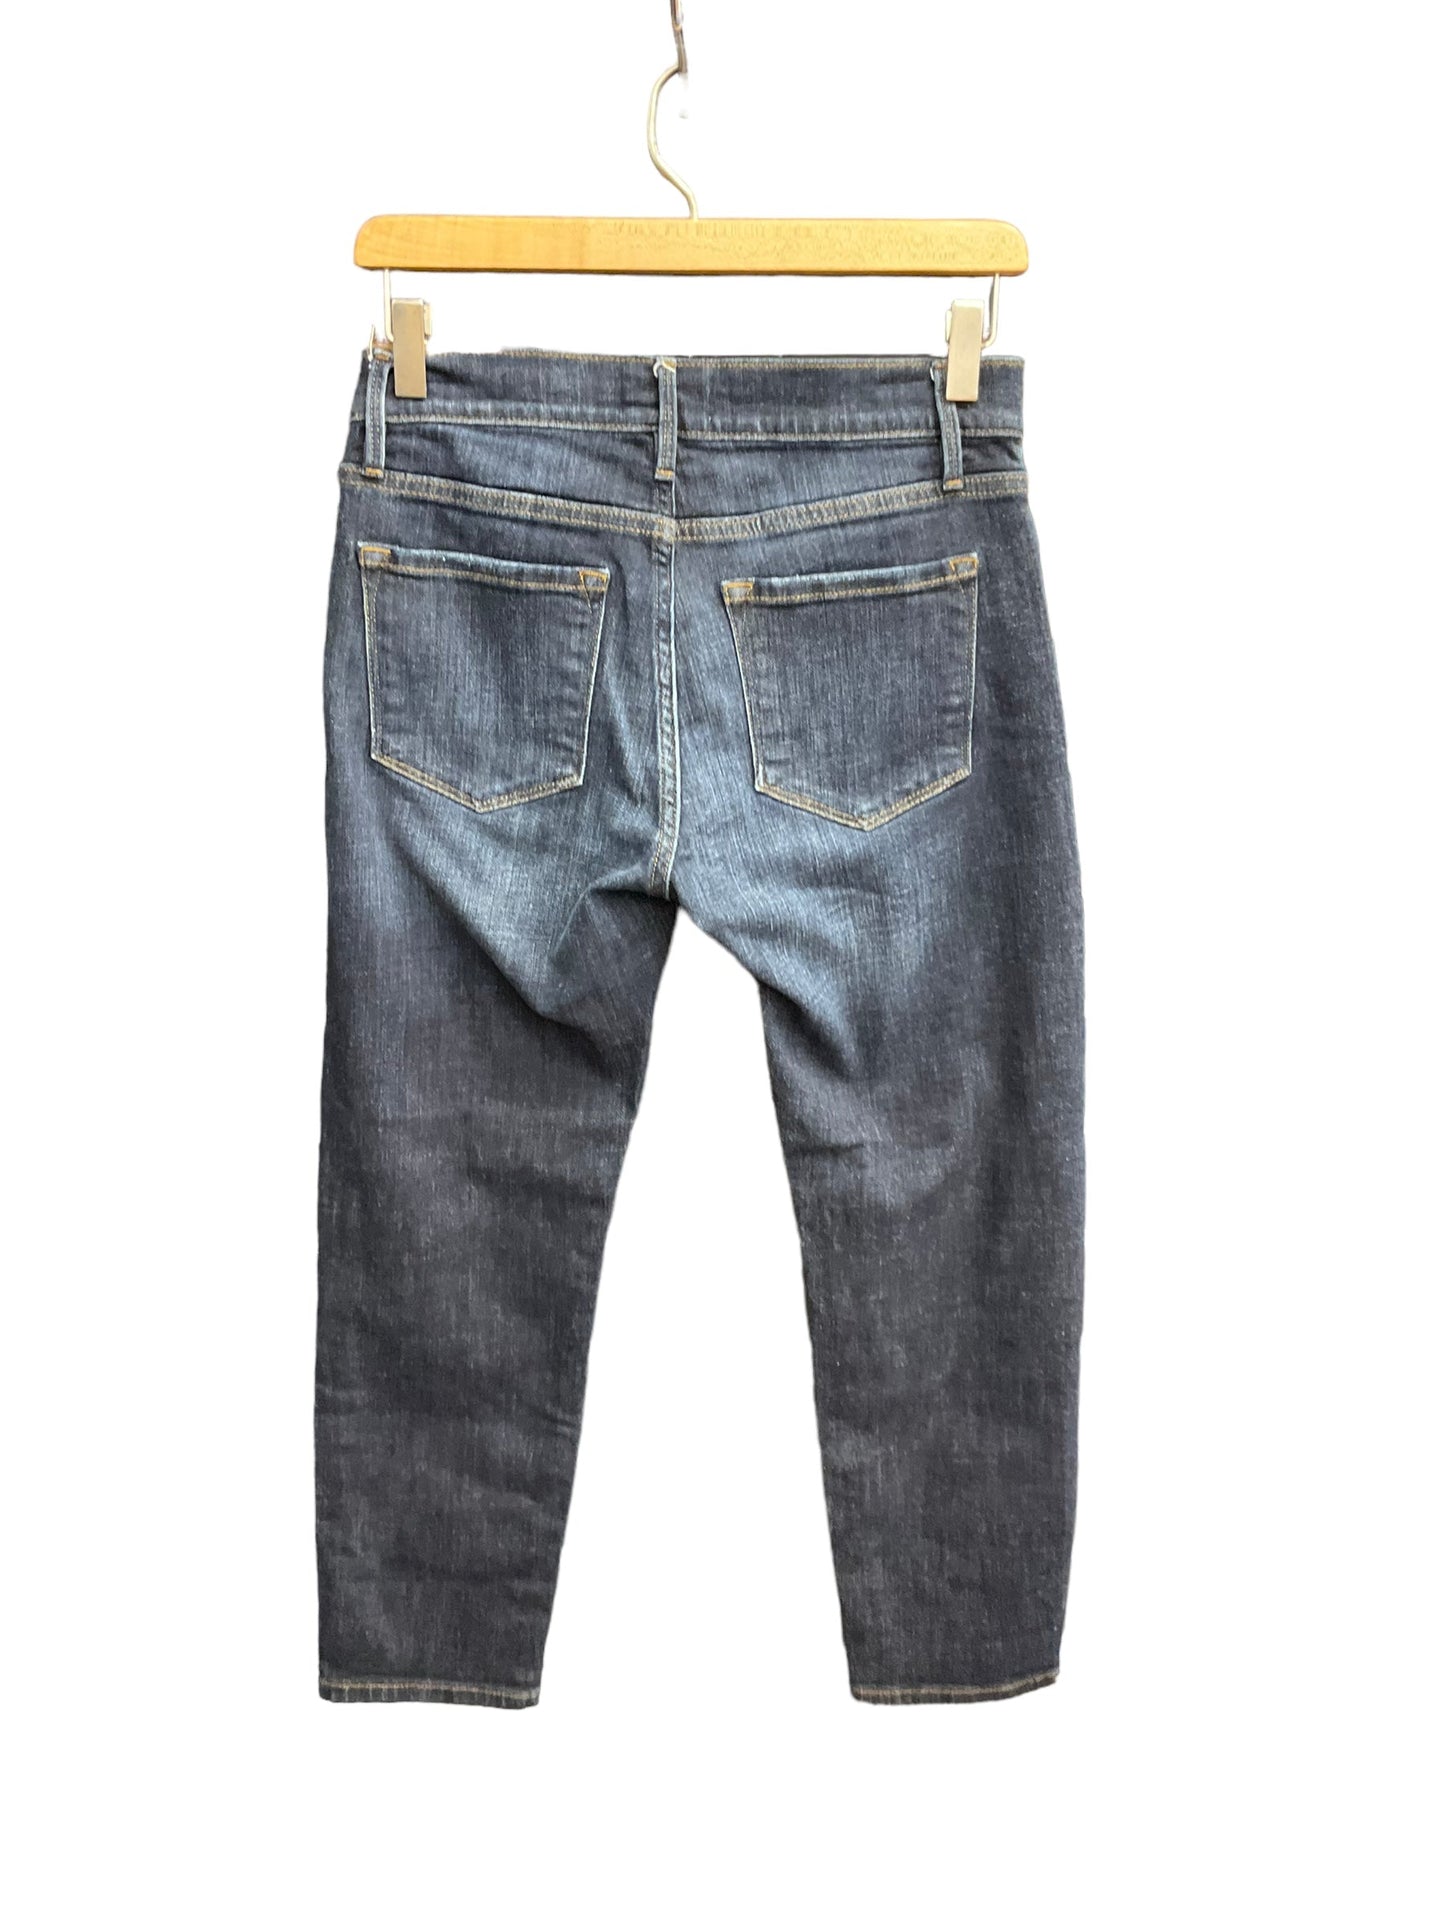 Blue Denim Jeans Cropped Frame, Size 0